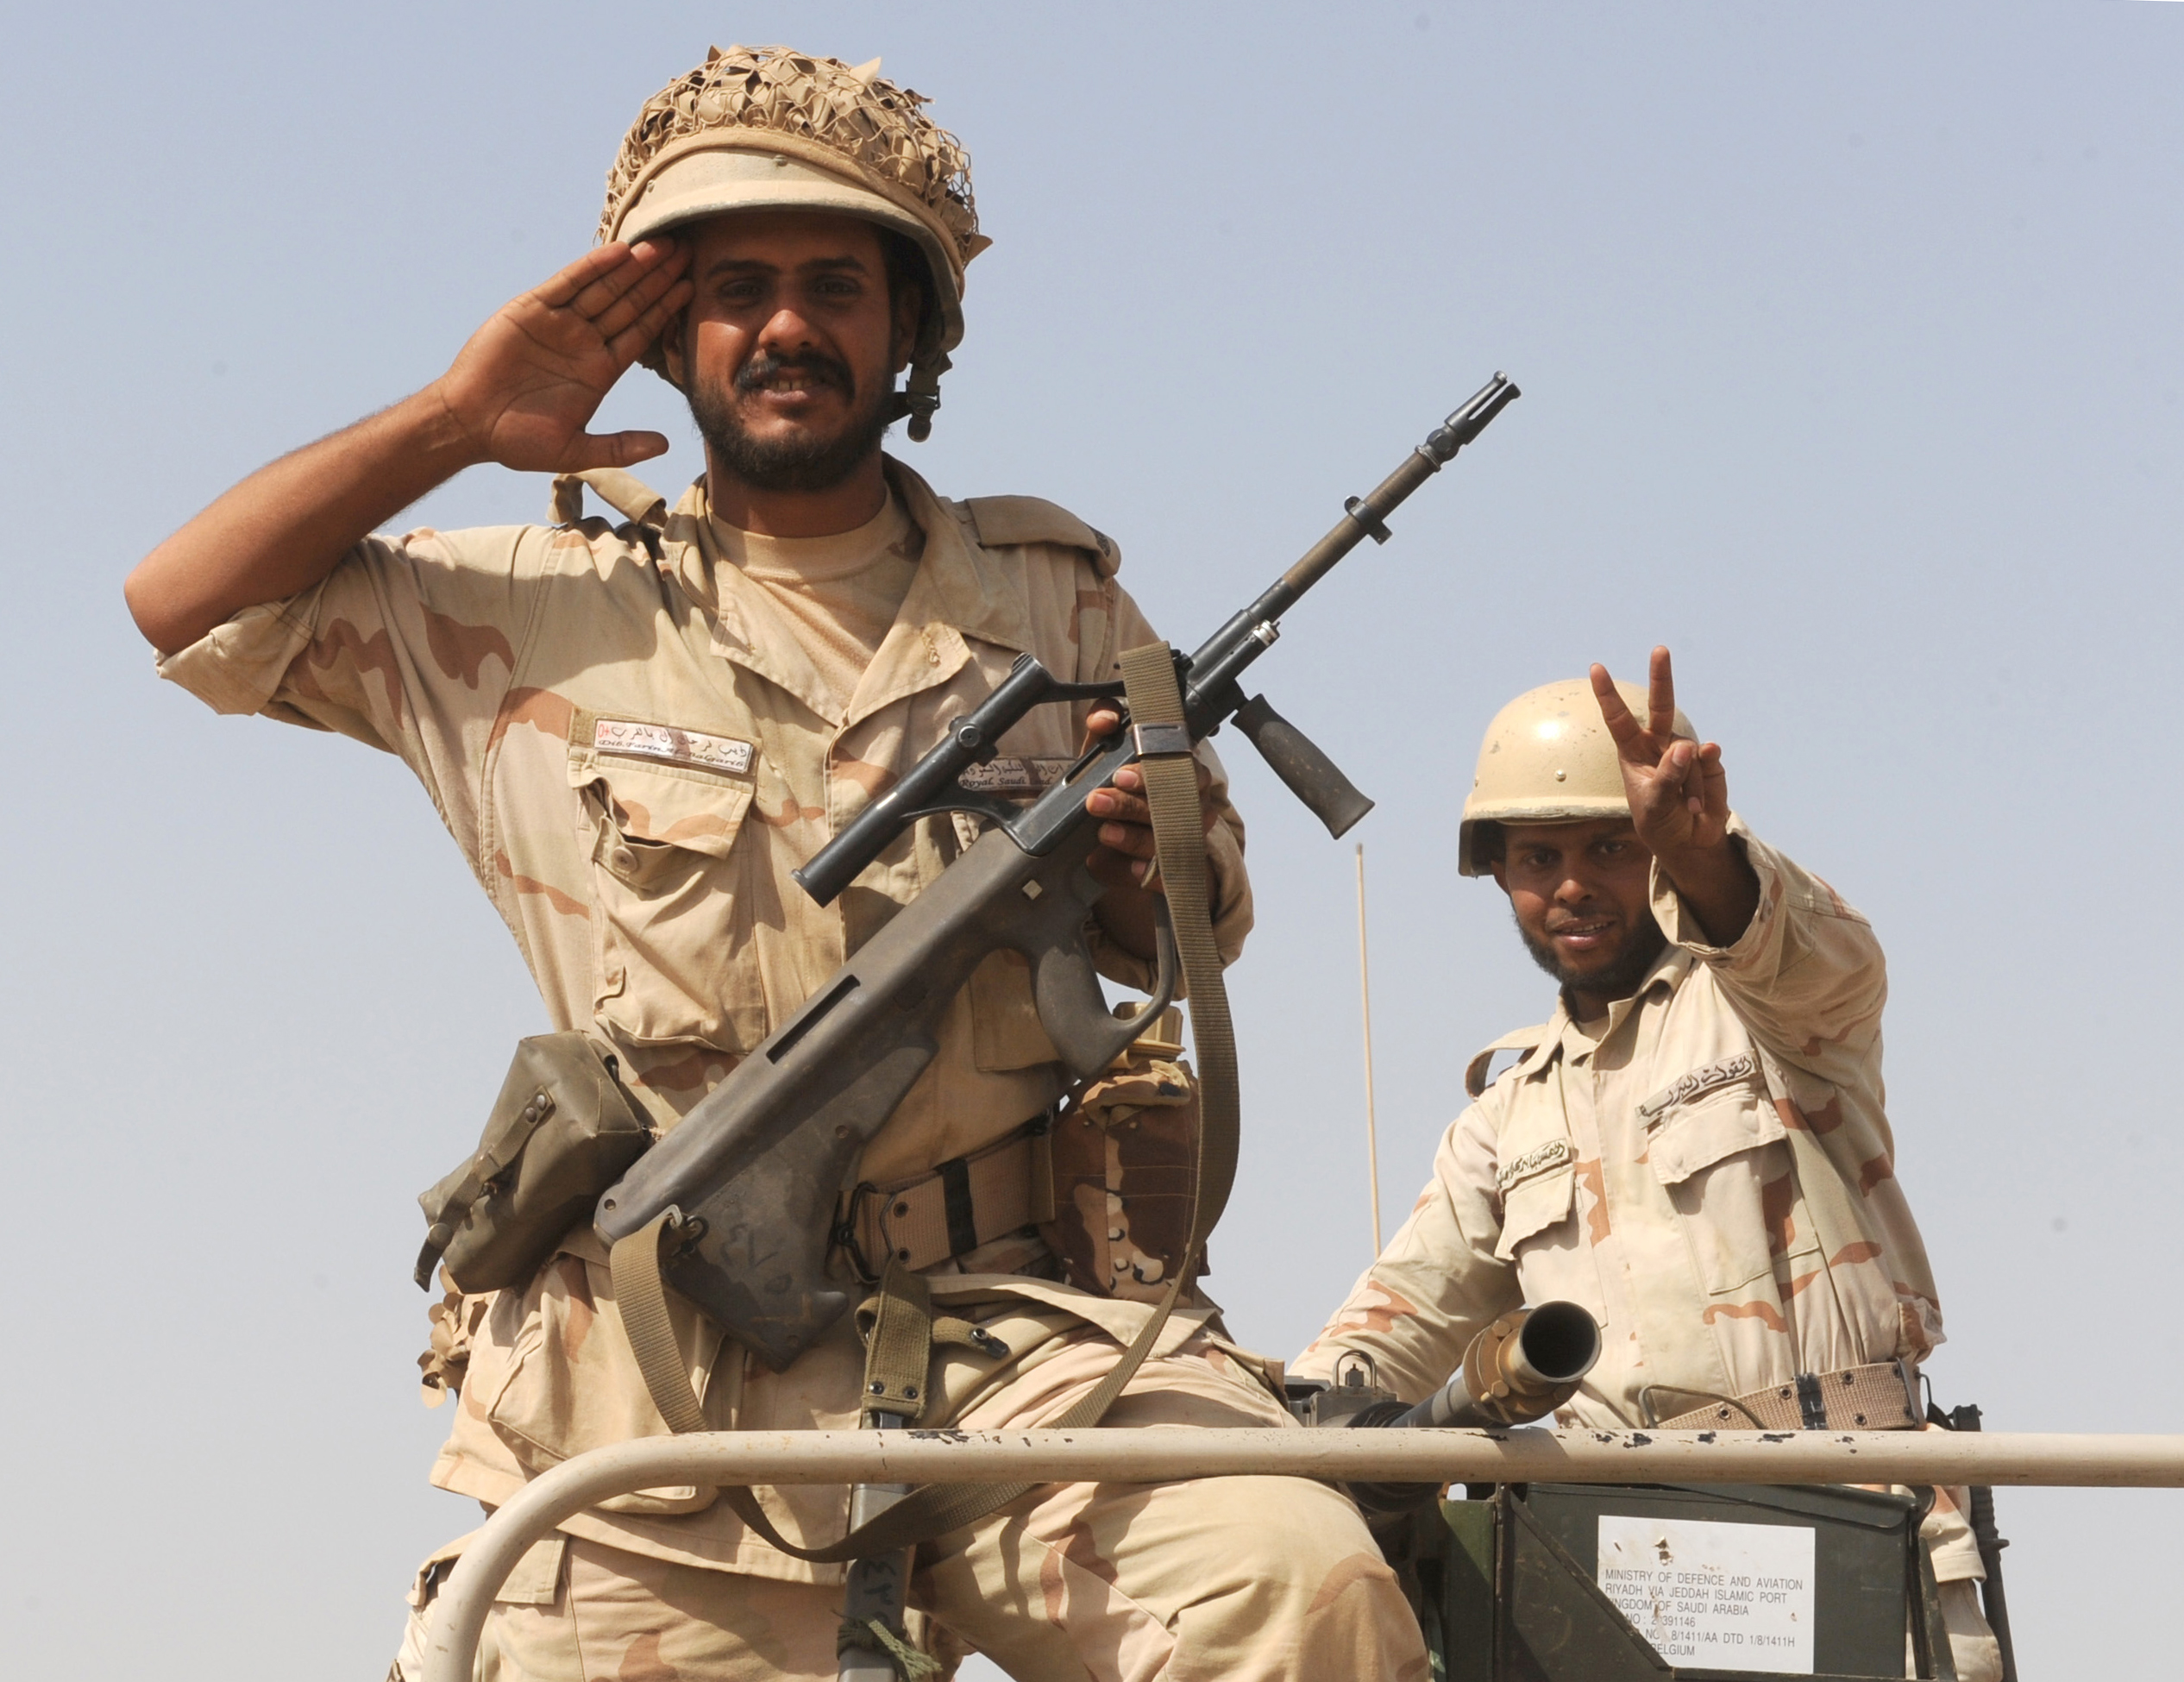 السعودية توسع المنطقة العازلة مع العراق مع تصاعد ضربات التحالف الدولي لداعش - CNNArabic.com